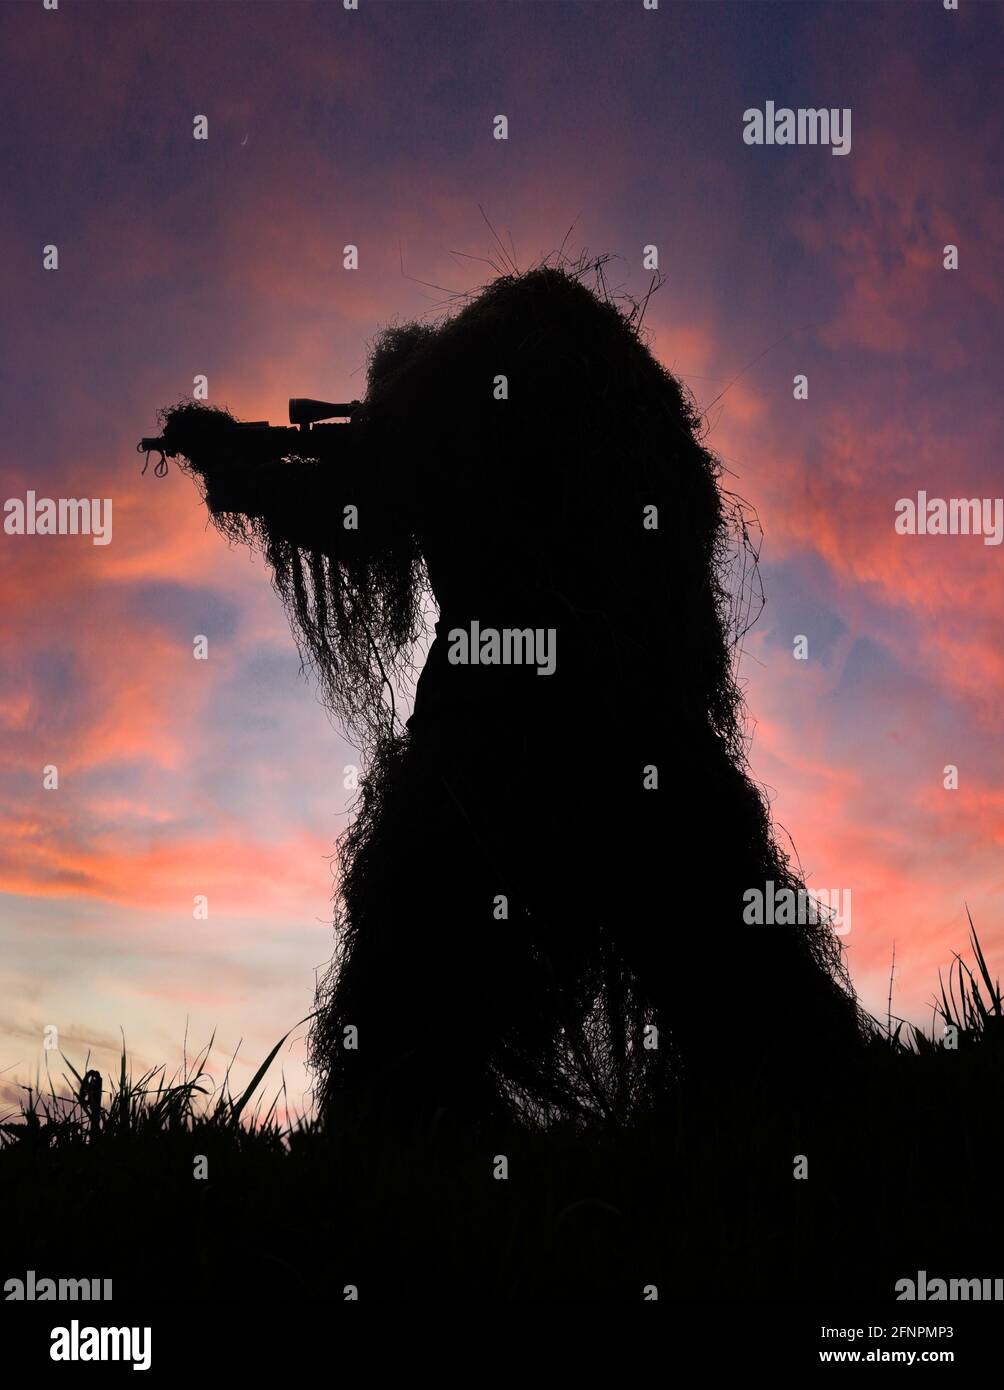 Paintball Sniper in Full Ghillie Suit Camouflage si è fatto strada contro un Sunset Sky sulla cima di una collina con la sua arma disegnata, puntata e pronta a sparare Foto Stock